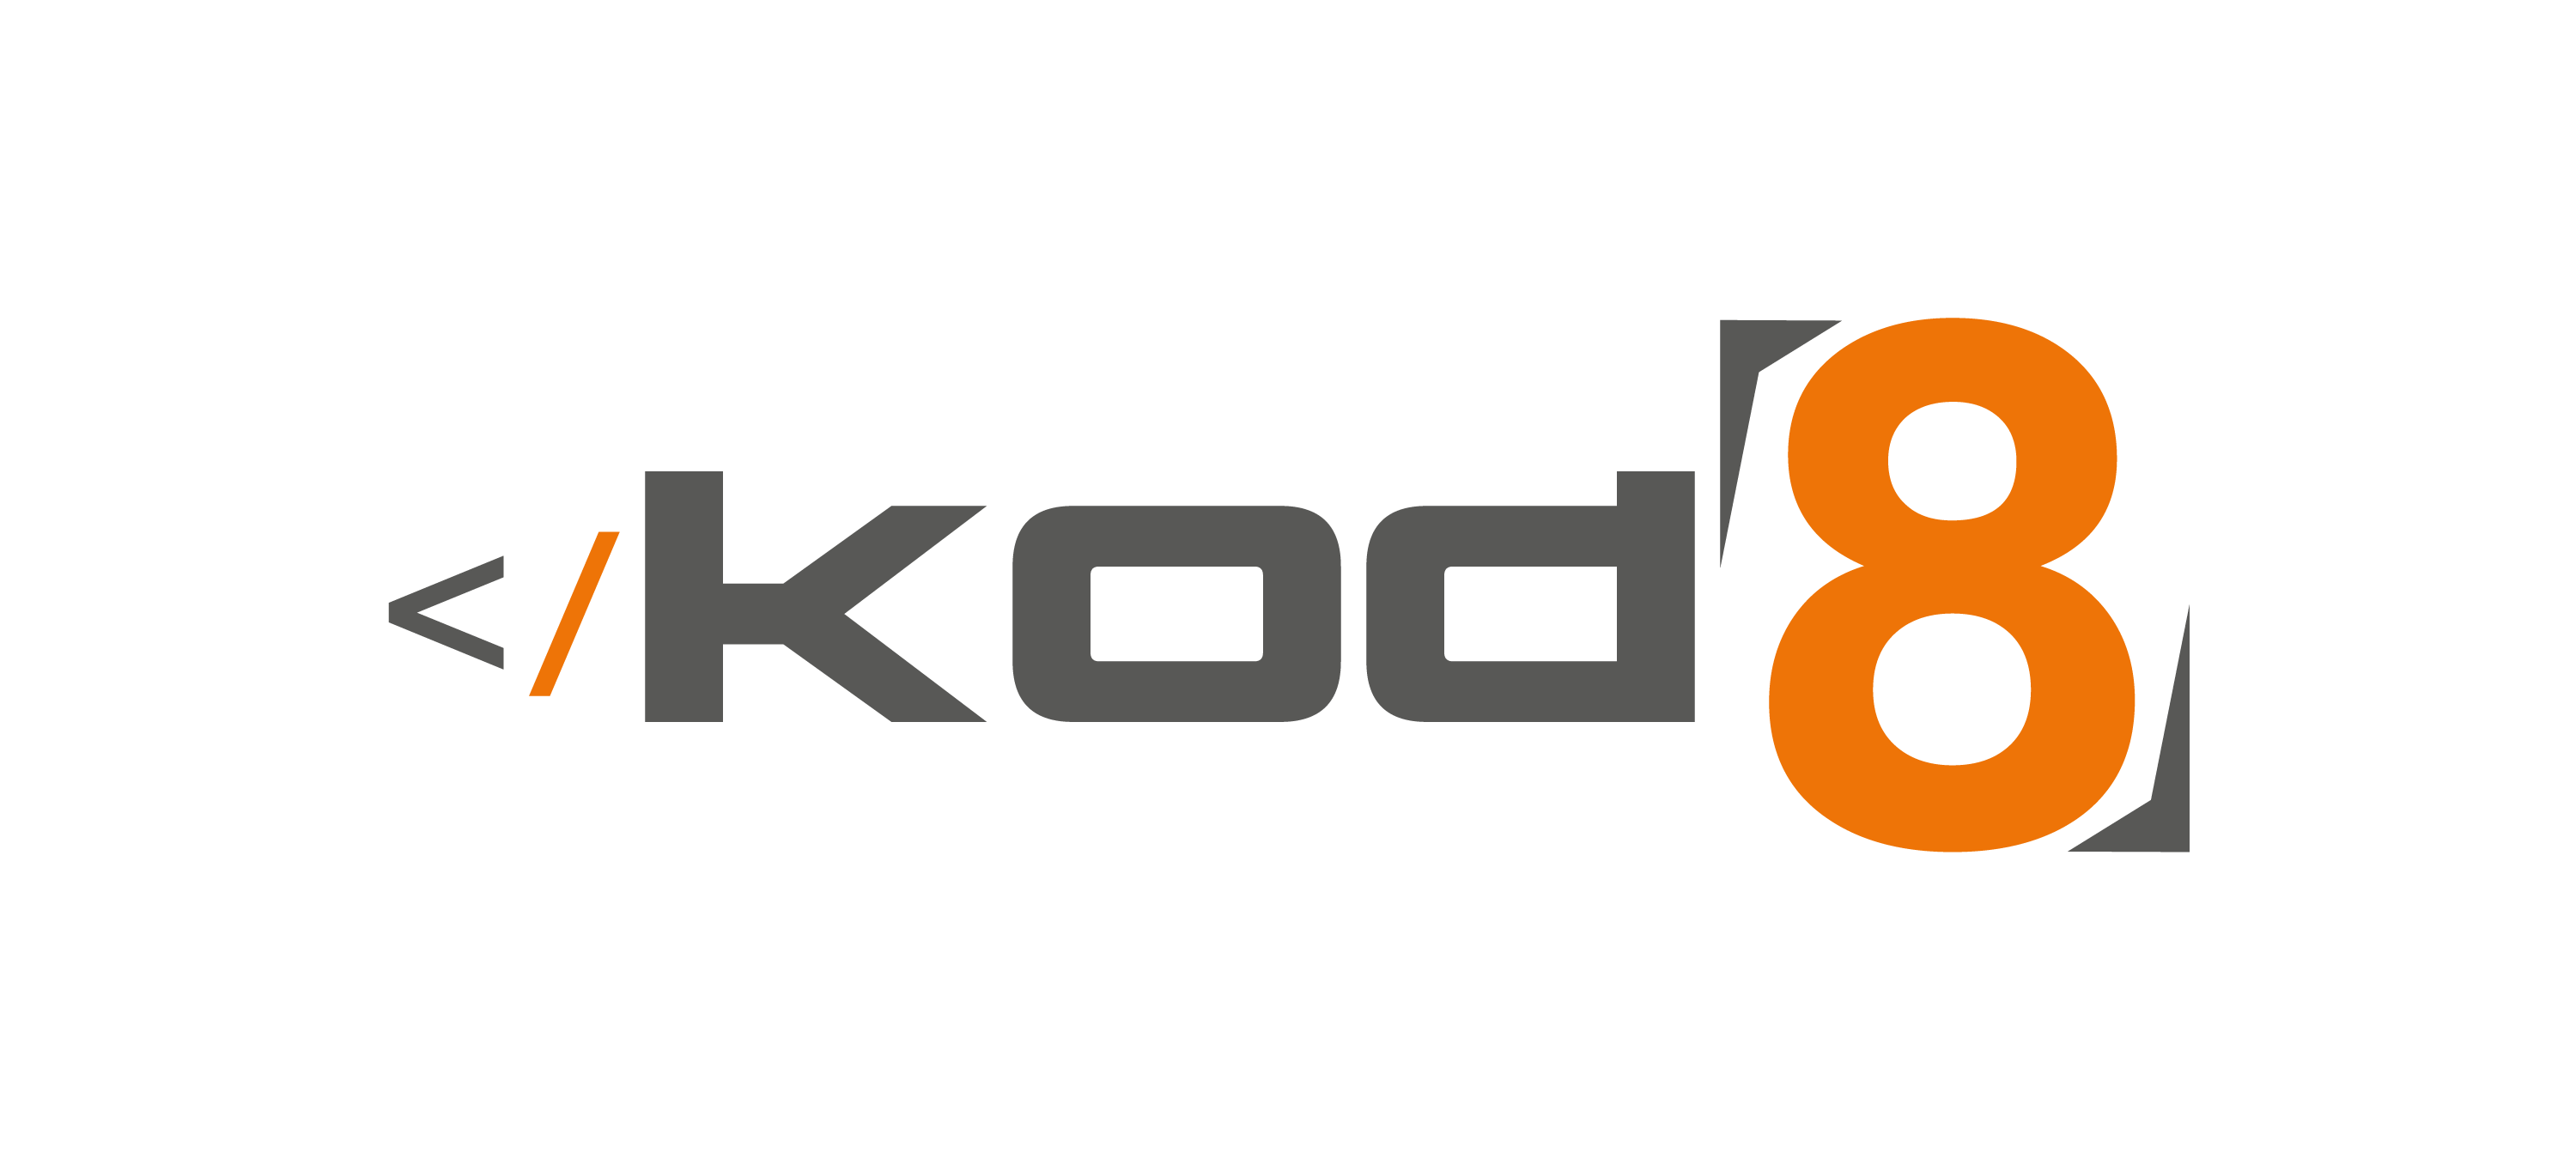 Kod8 Yazılım Teknolojileri